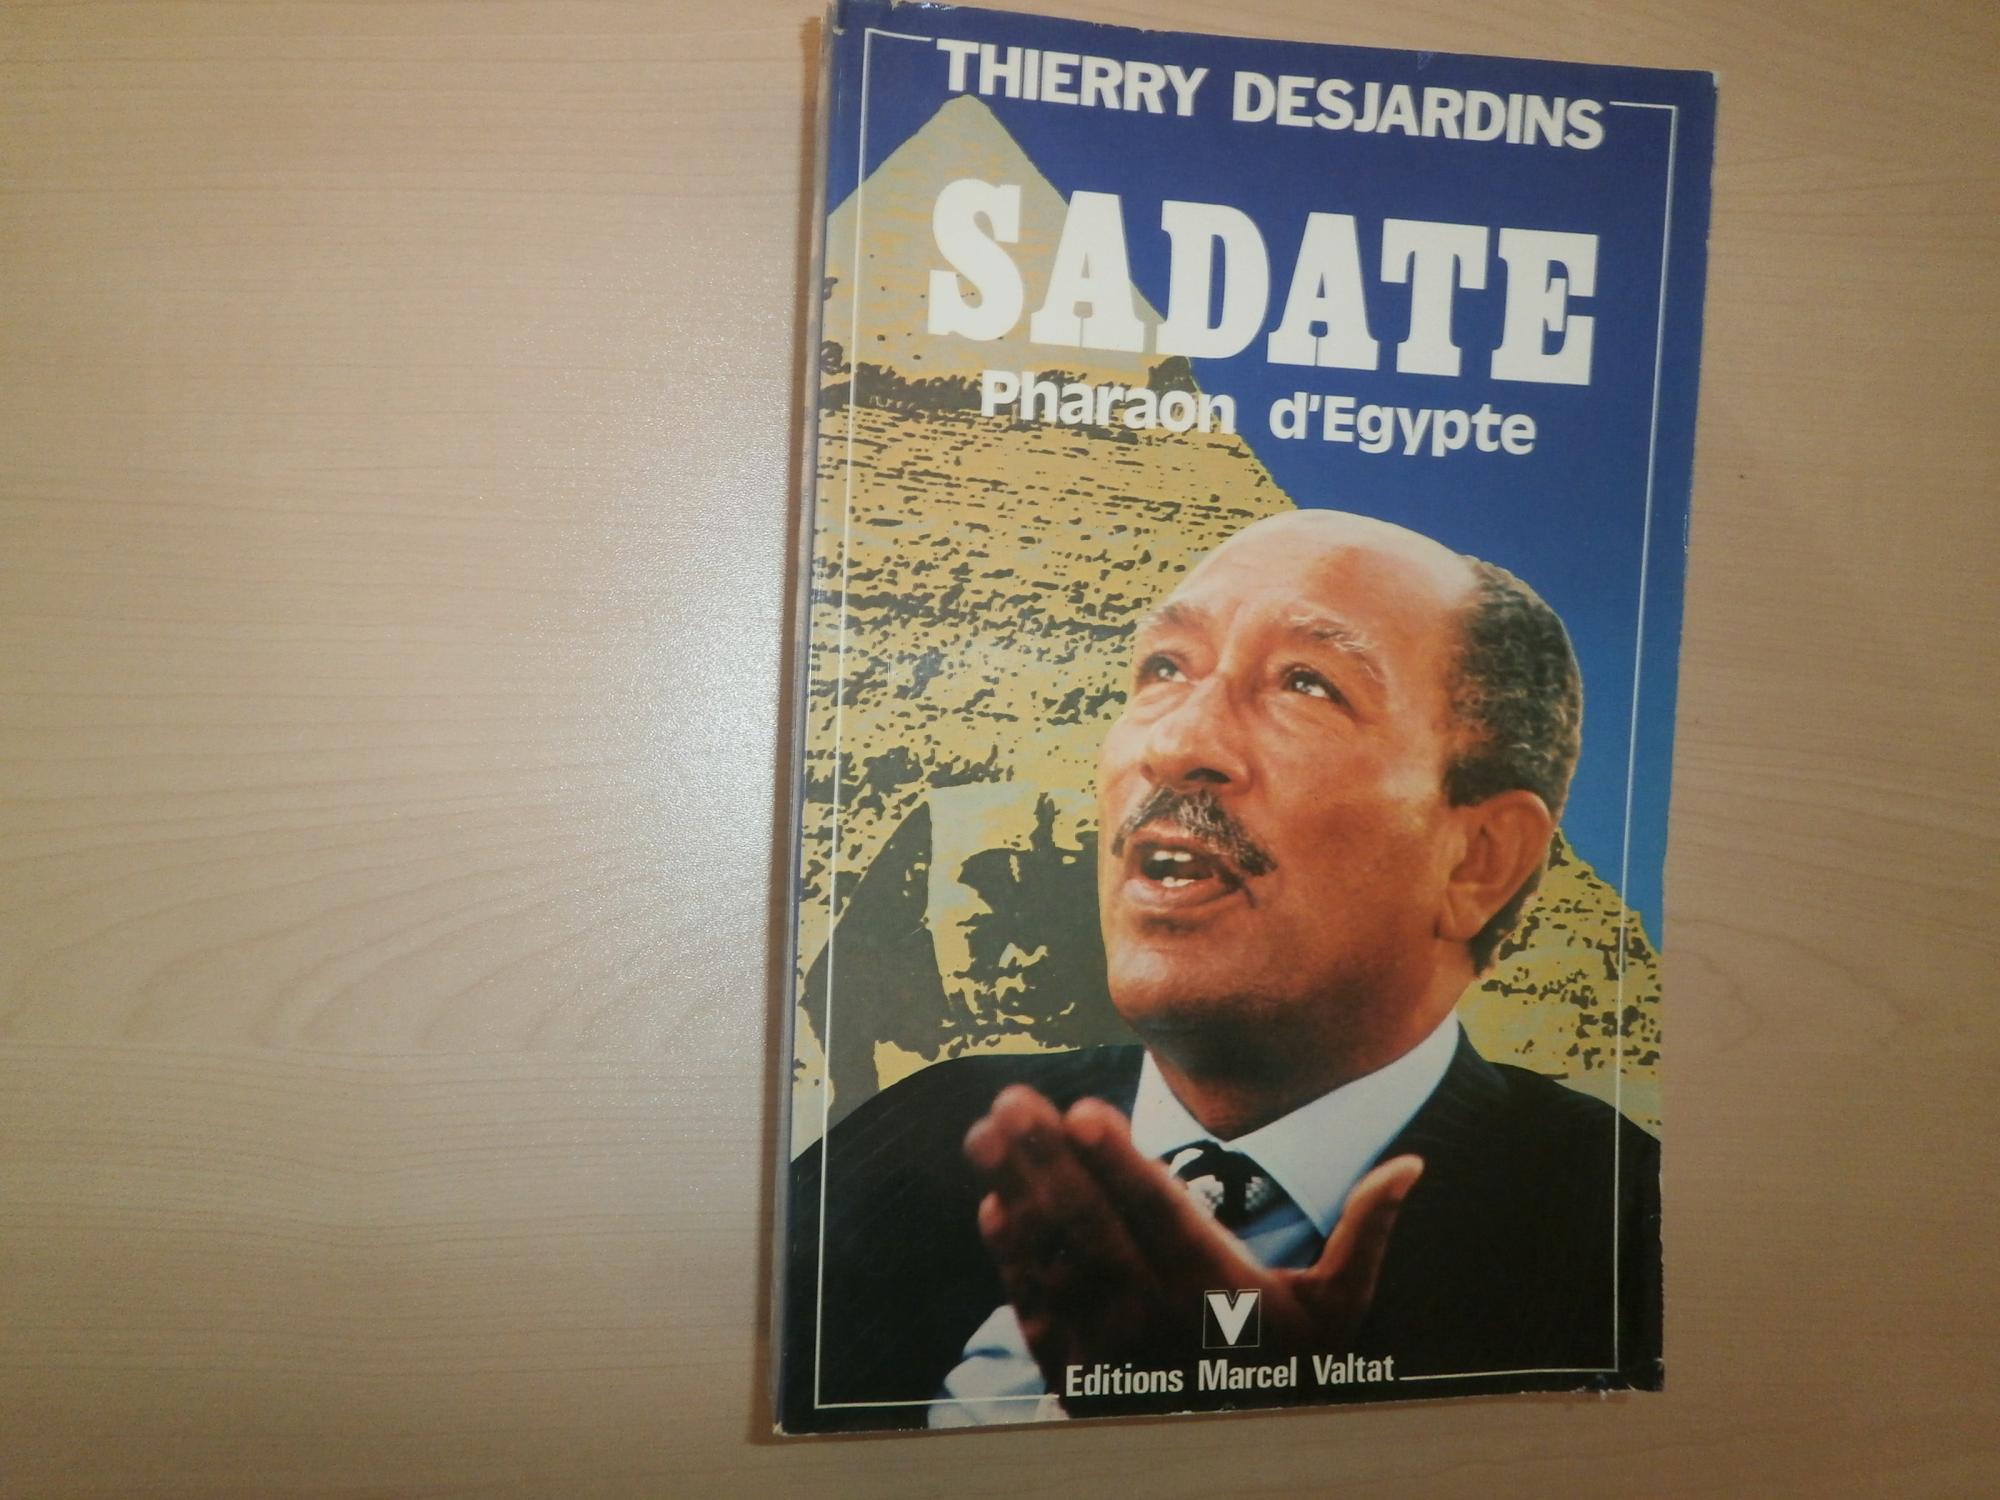 Sadate, pharaon d' egypte - DESJARDINS THIERRY